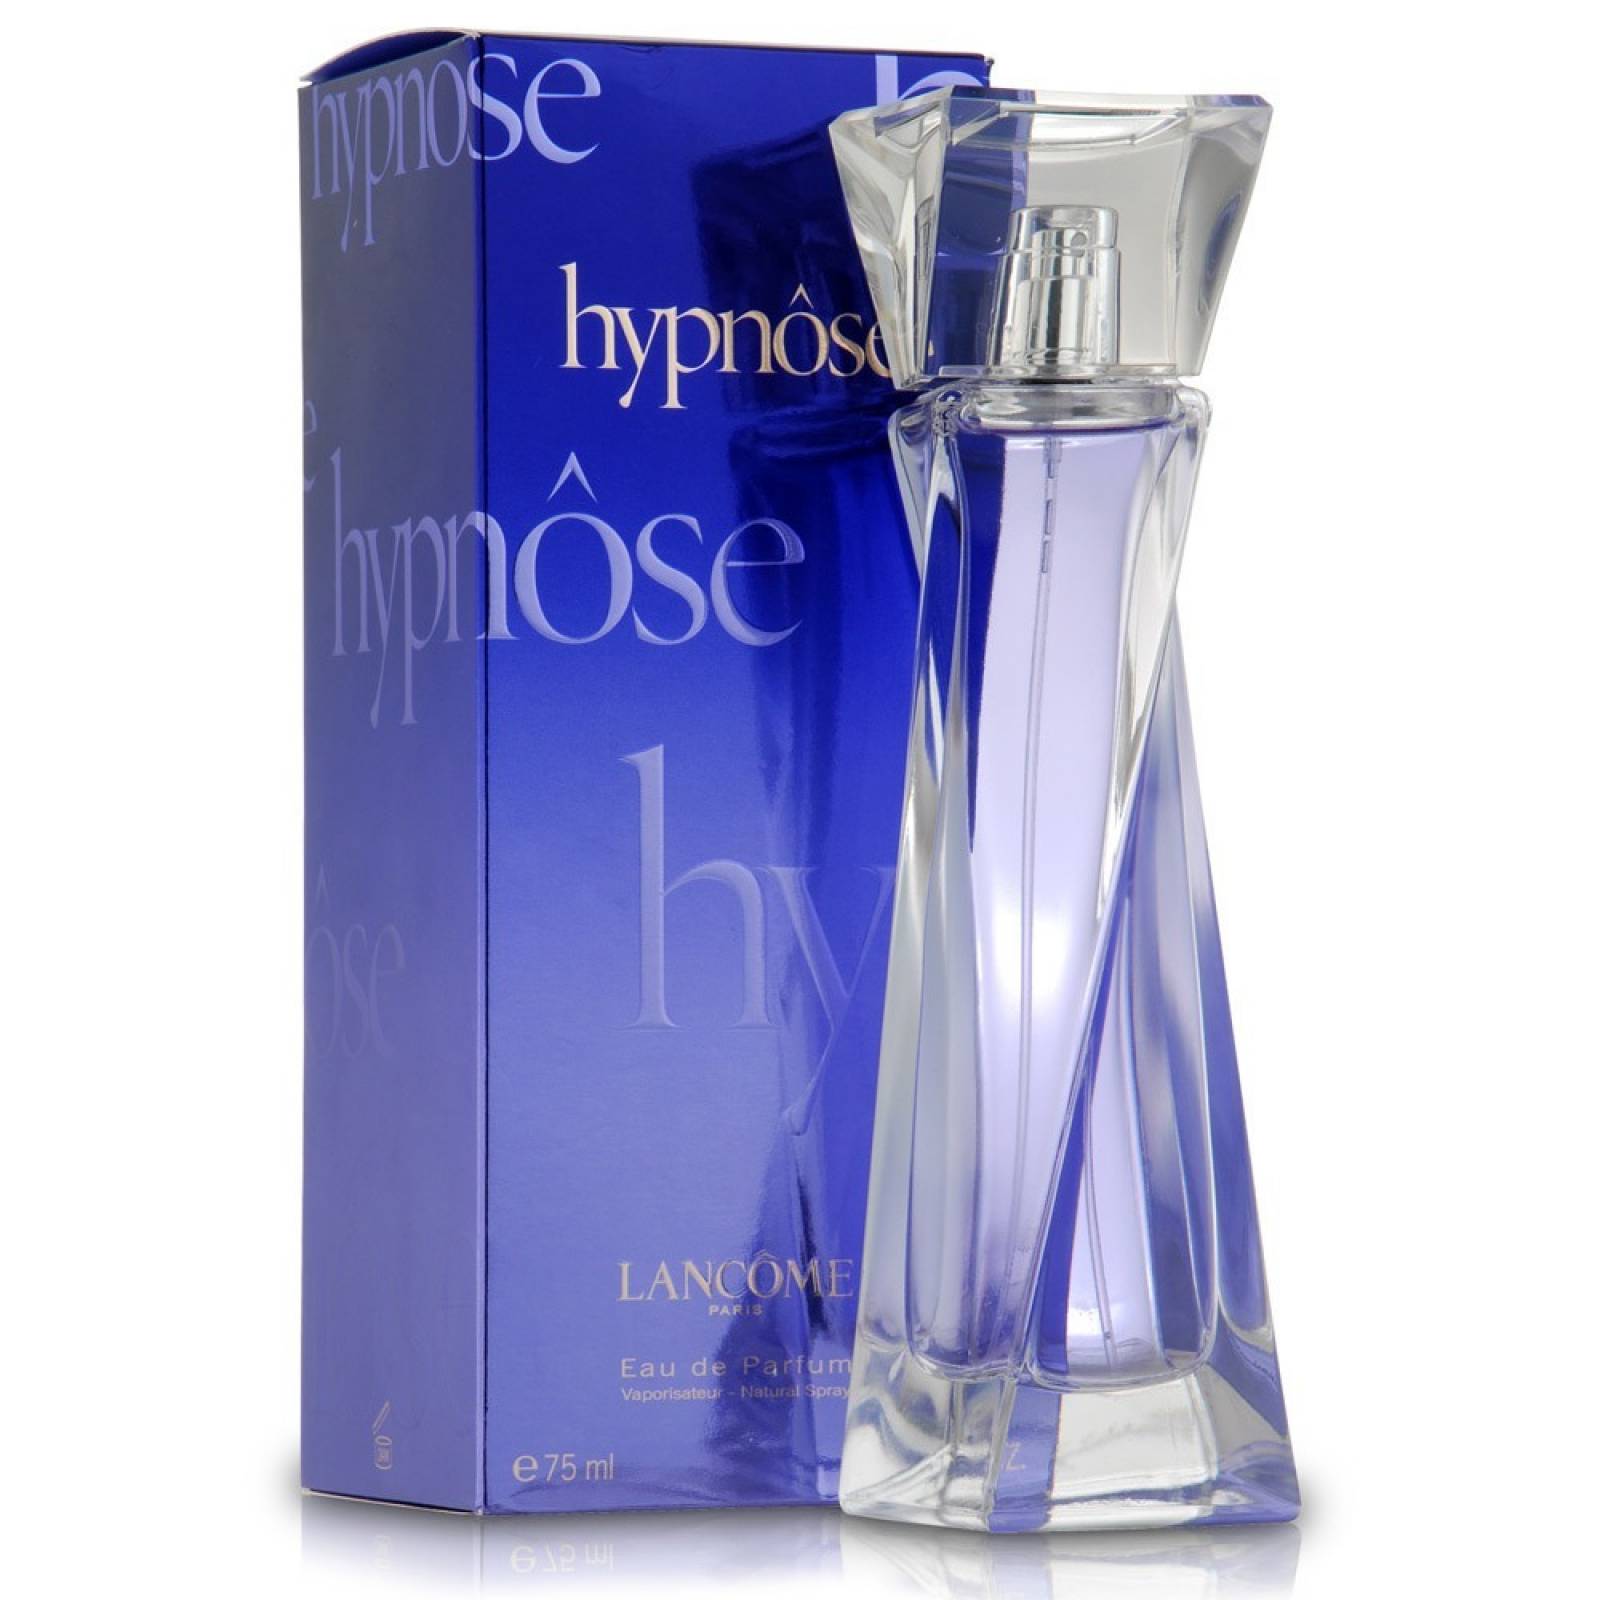 Hypnose De Lancome Eau De Parfum 75 ml